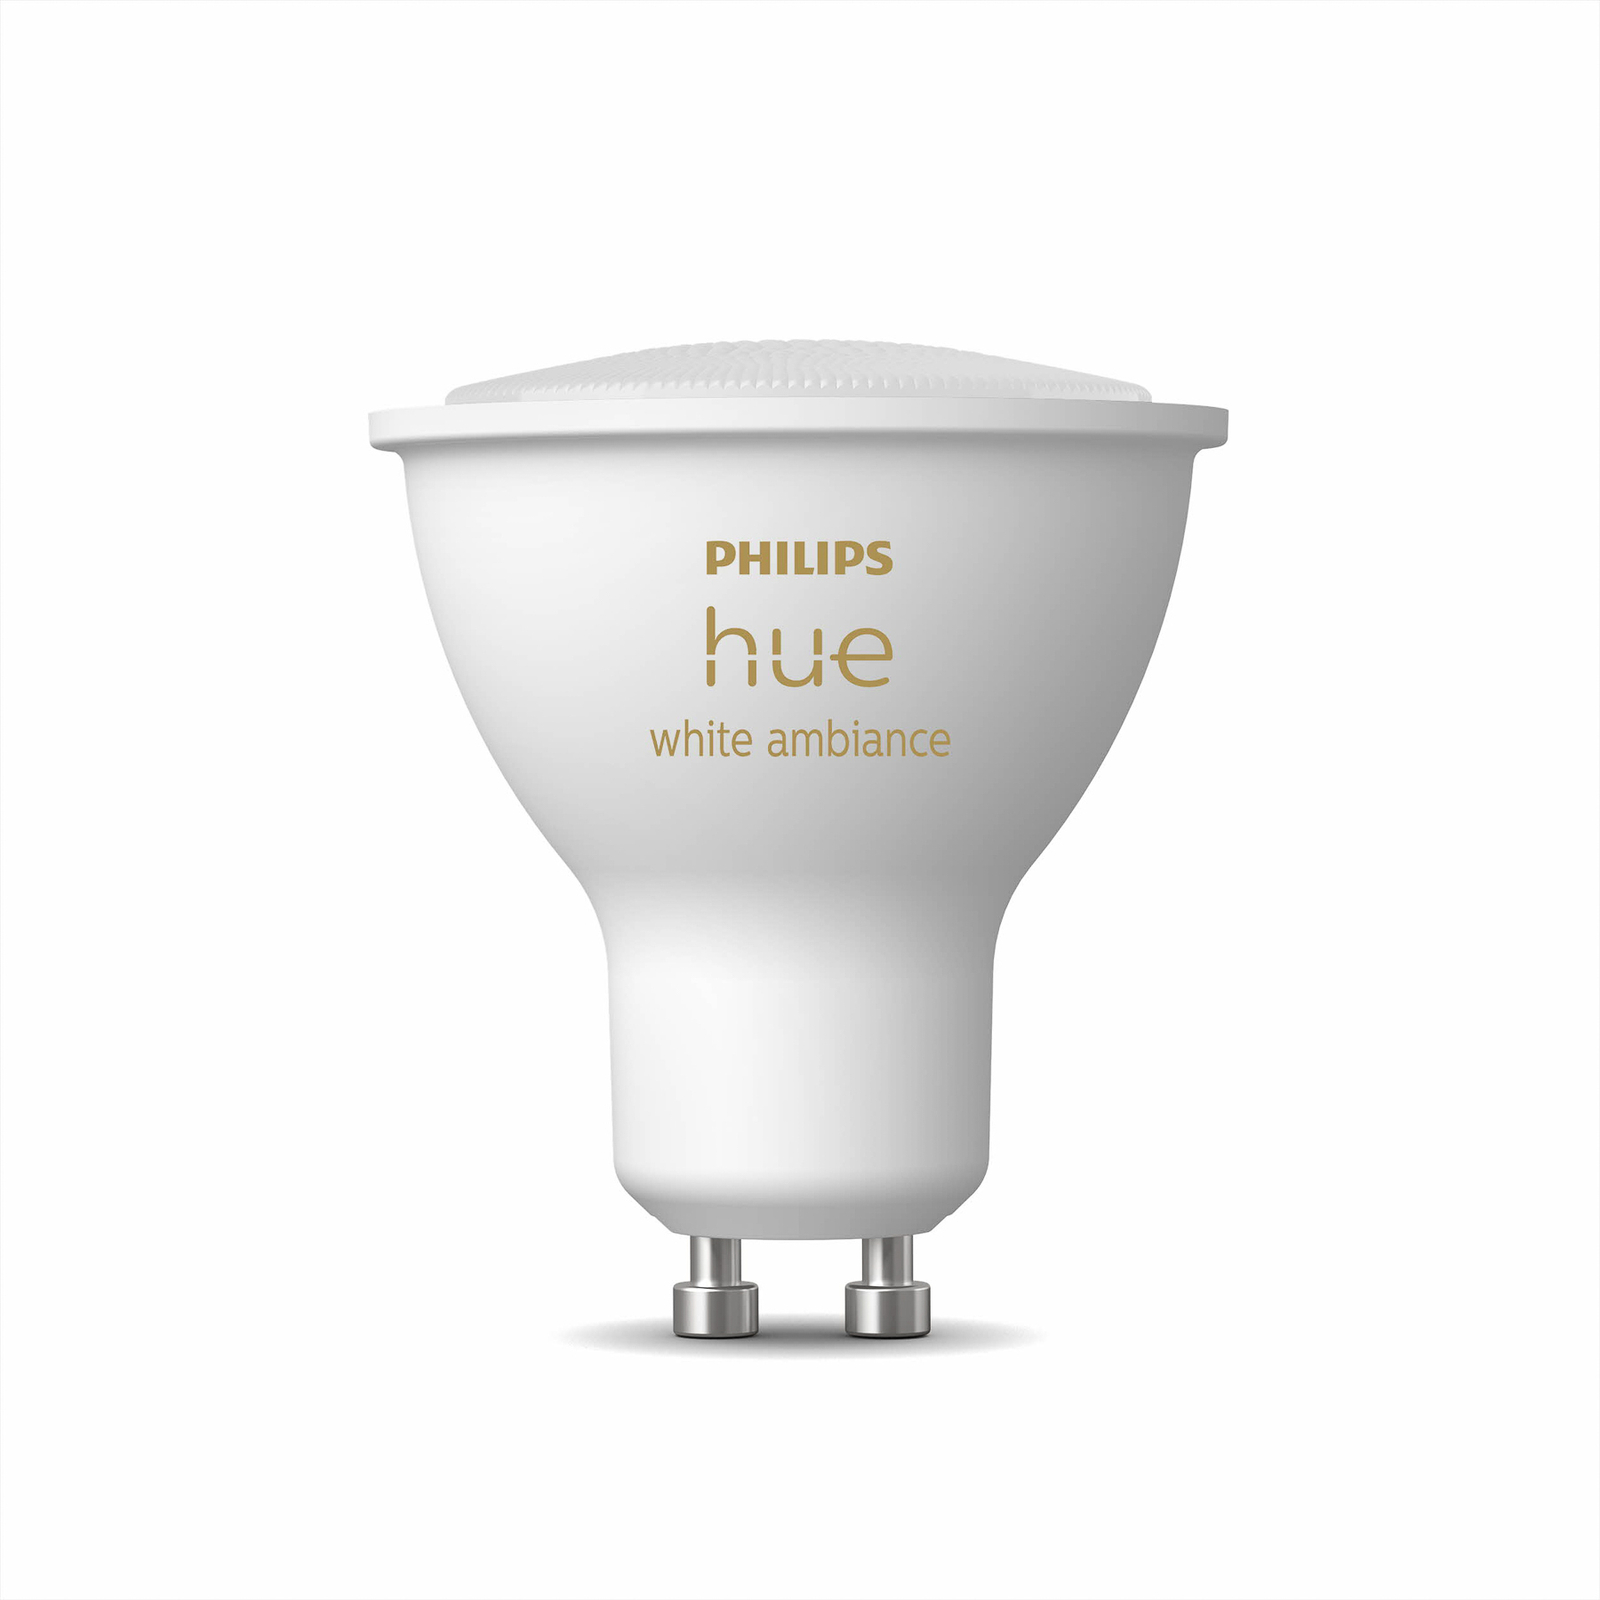 Vlieger aanvaardbaar Onderbreking Philips Hue White Ambiance 4,3 W GU10 LED lamp | Lampen24.nl